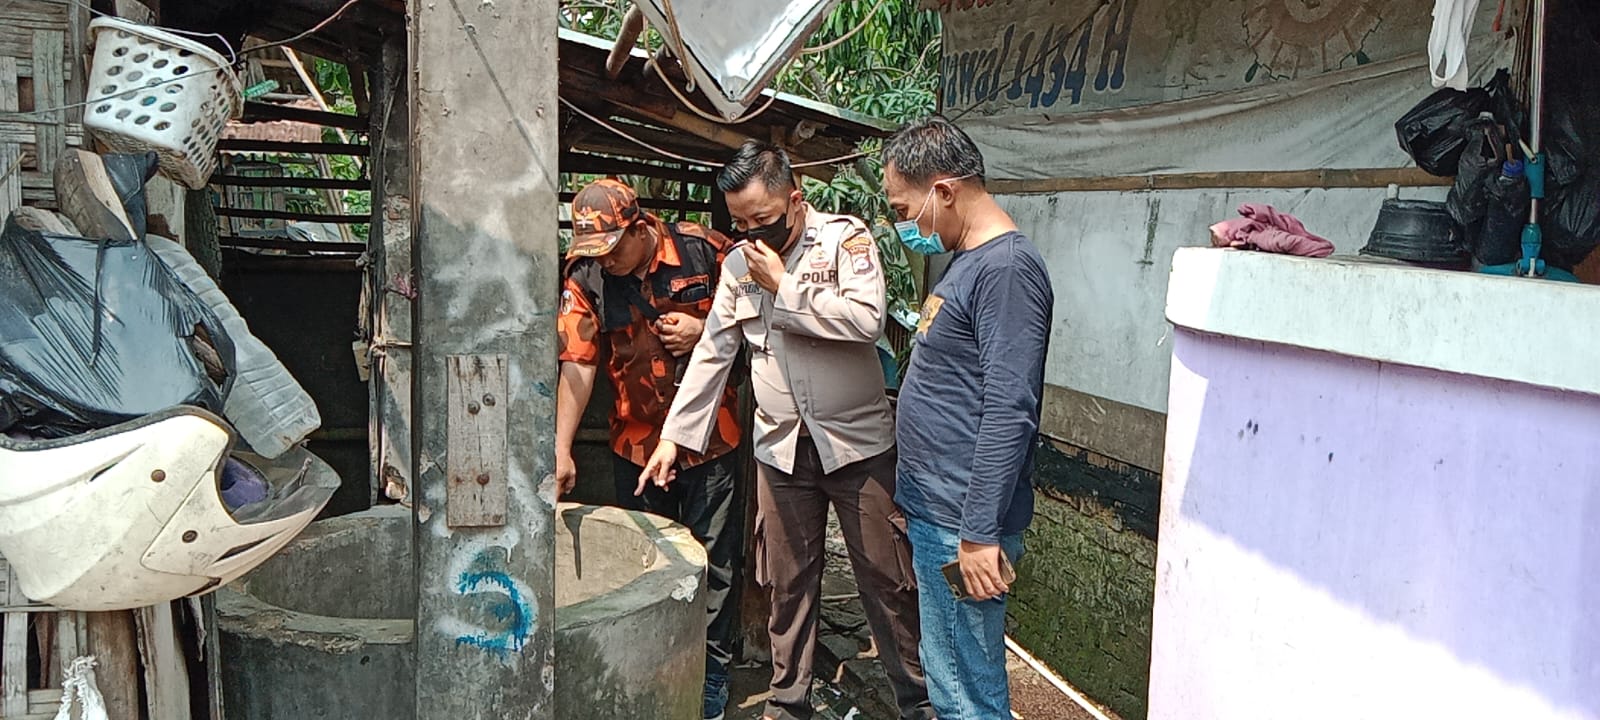 Pria di Tangerang yang Lompat ke Dalam Sumur Ternyata Sudah 20 Tahun Alami Gangguan Mental